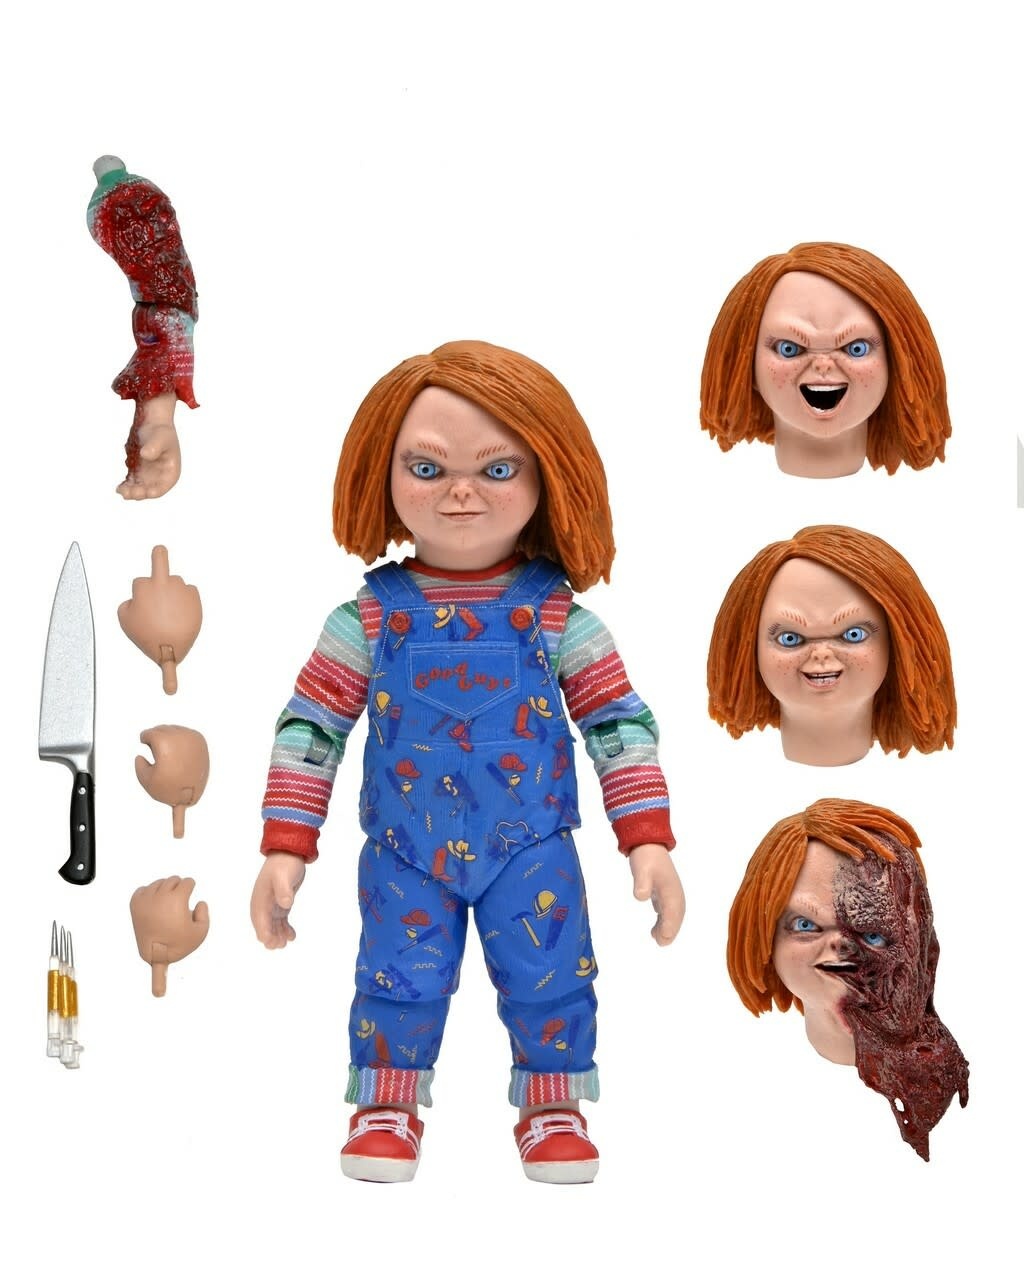 Poupée Chucky sideshow